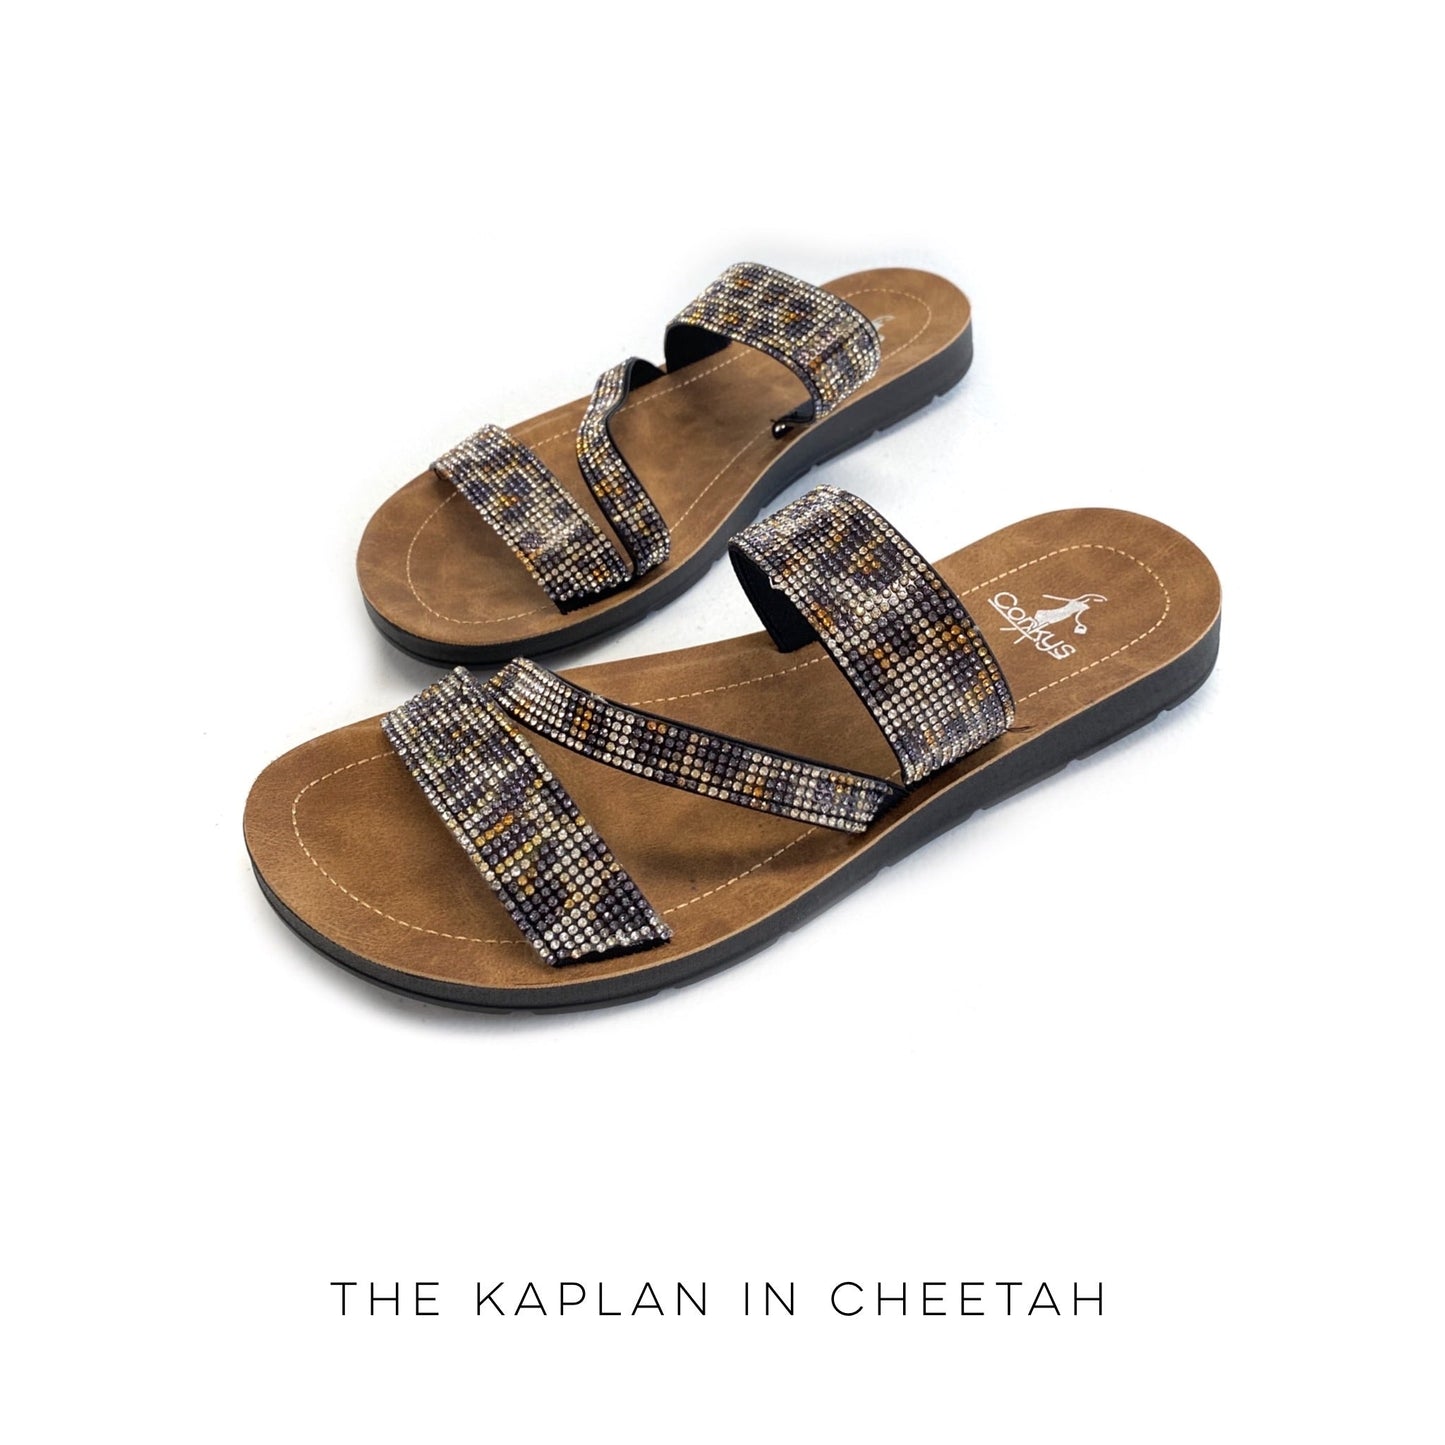 The Kaplan in Cheetah